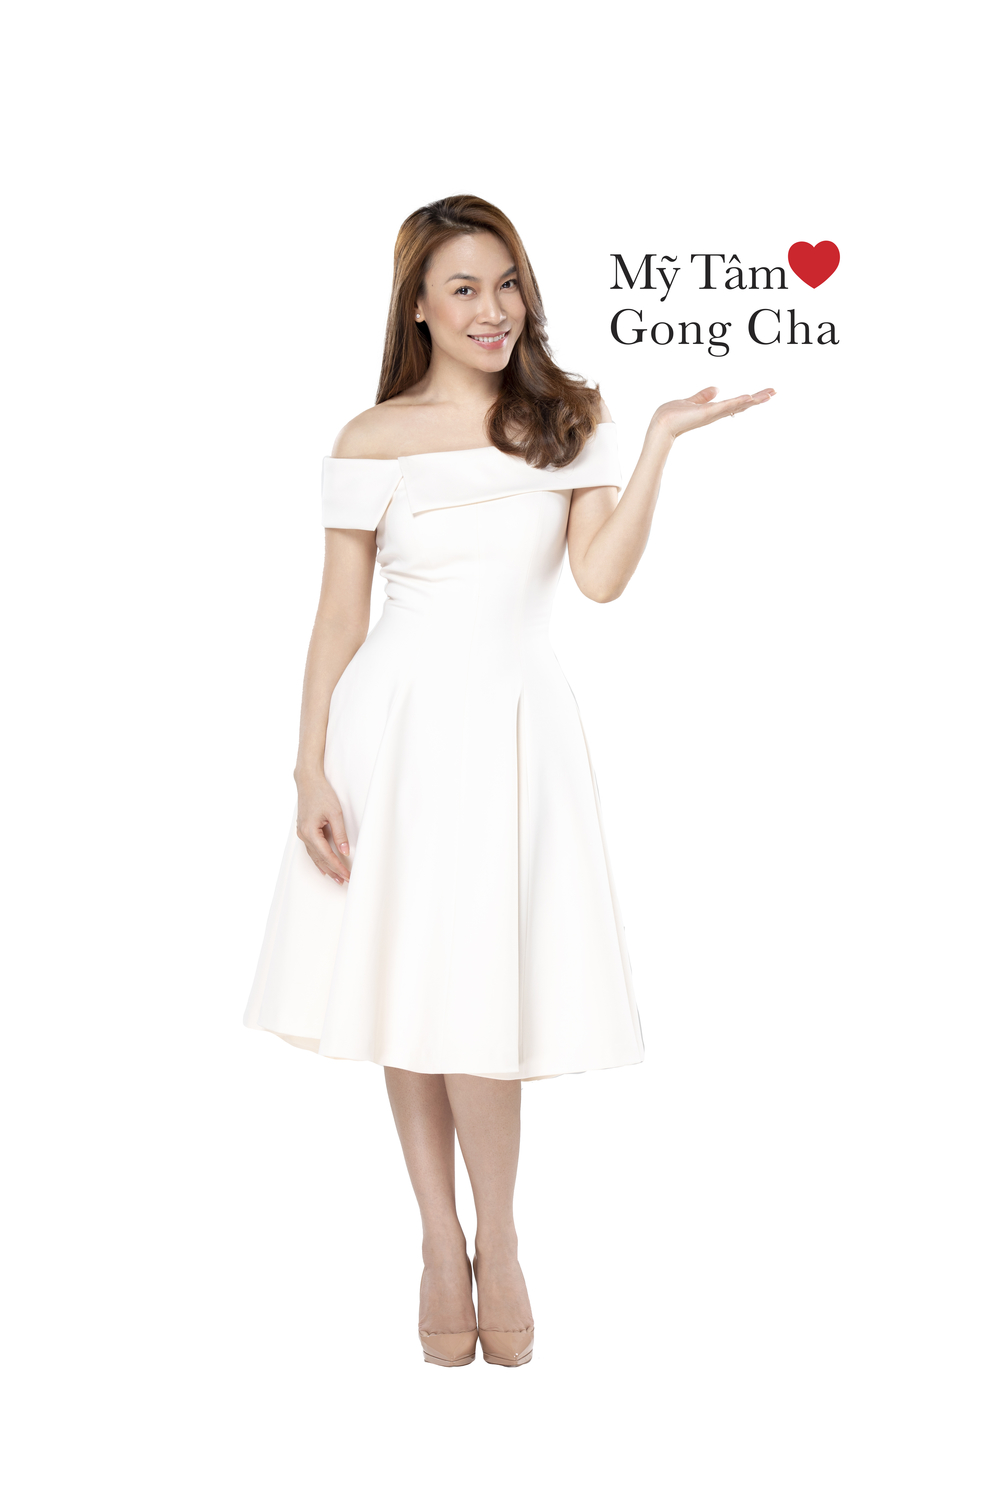  
Mỹ Tâm chính thức trở thành đại sứ thương hiệu cho trà sữa Gong Cha trong năm 2019. - Tin sao Viet - Tin tuc sao Viet - Scandal sao Viet - Tin tuc cua Sao - Tin cua Sao